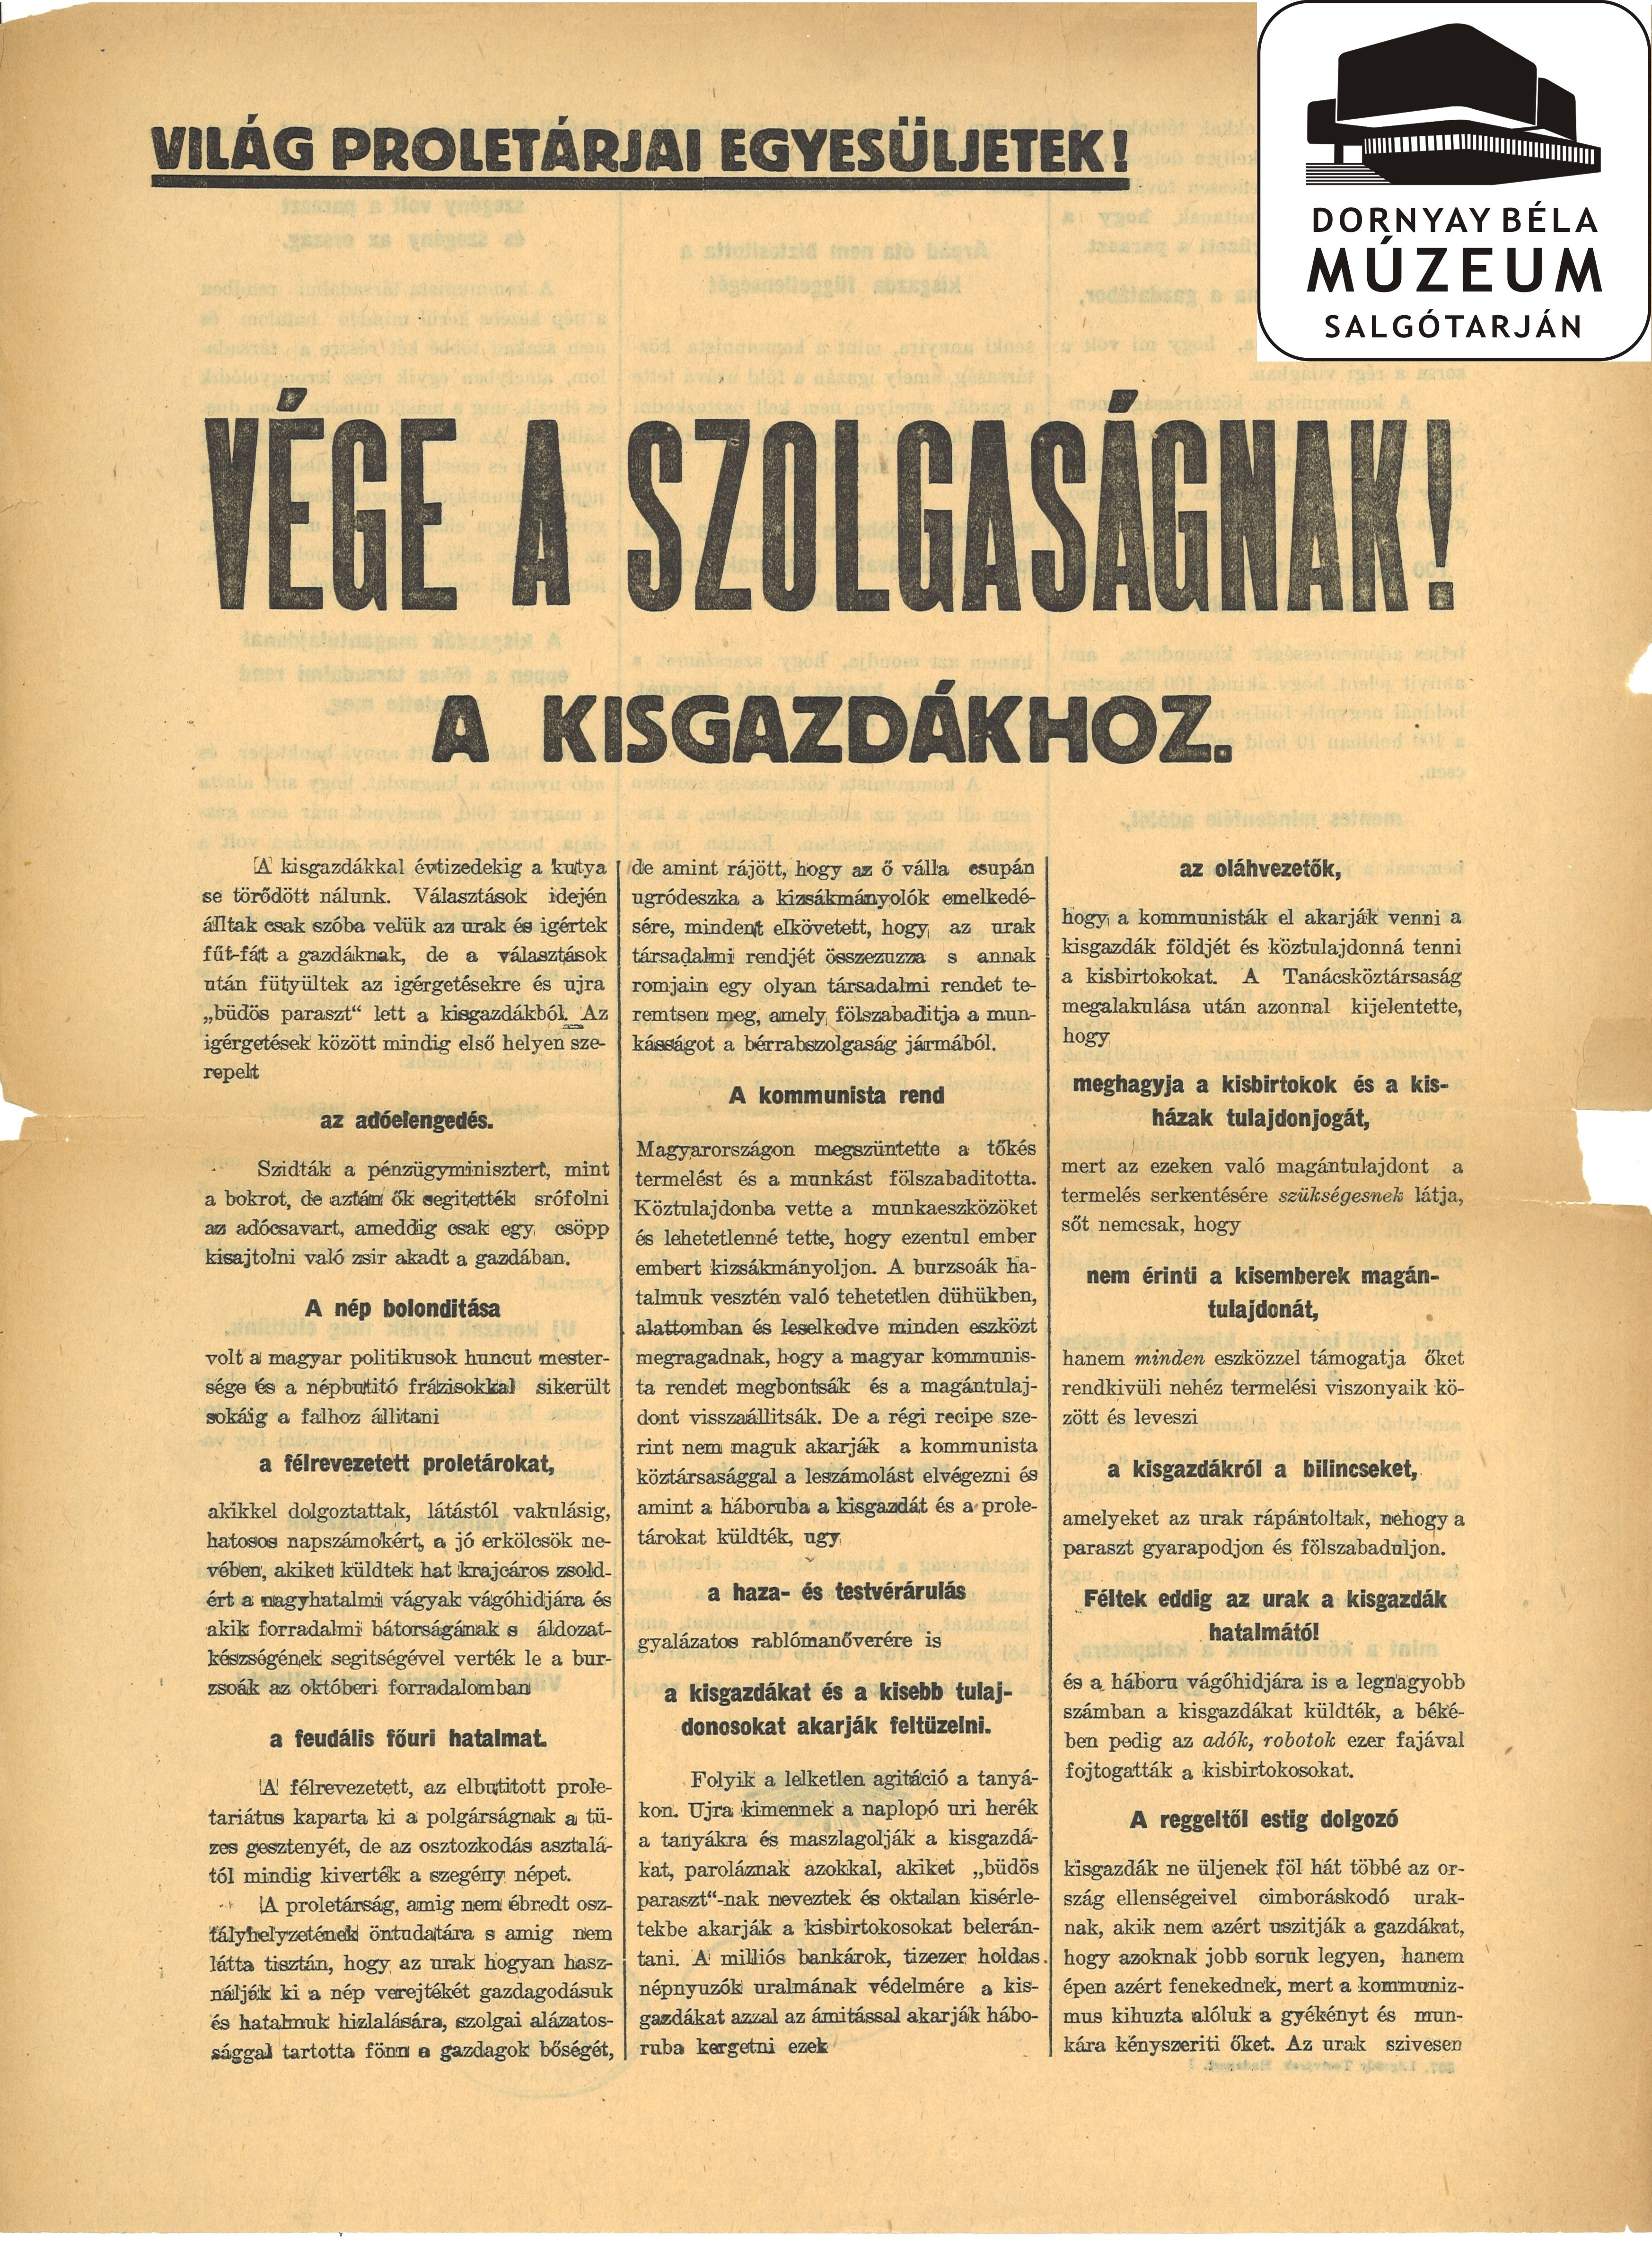 Tanácsköztársaság. A Kisgazdákhoz. (Dornyay Béla Múzeum, Salgótarján CC BY-NC-SA)